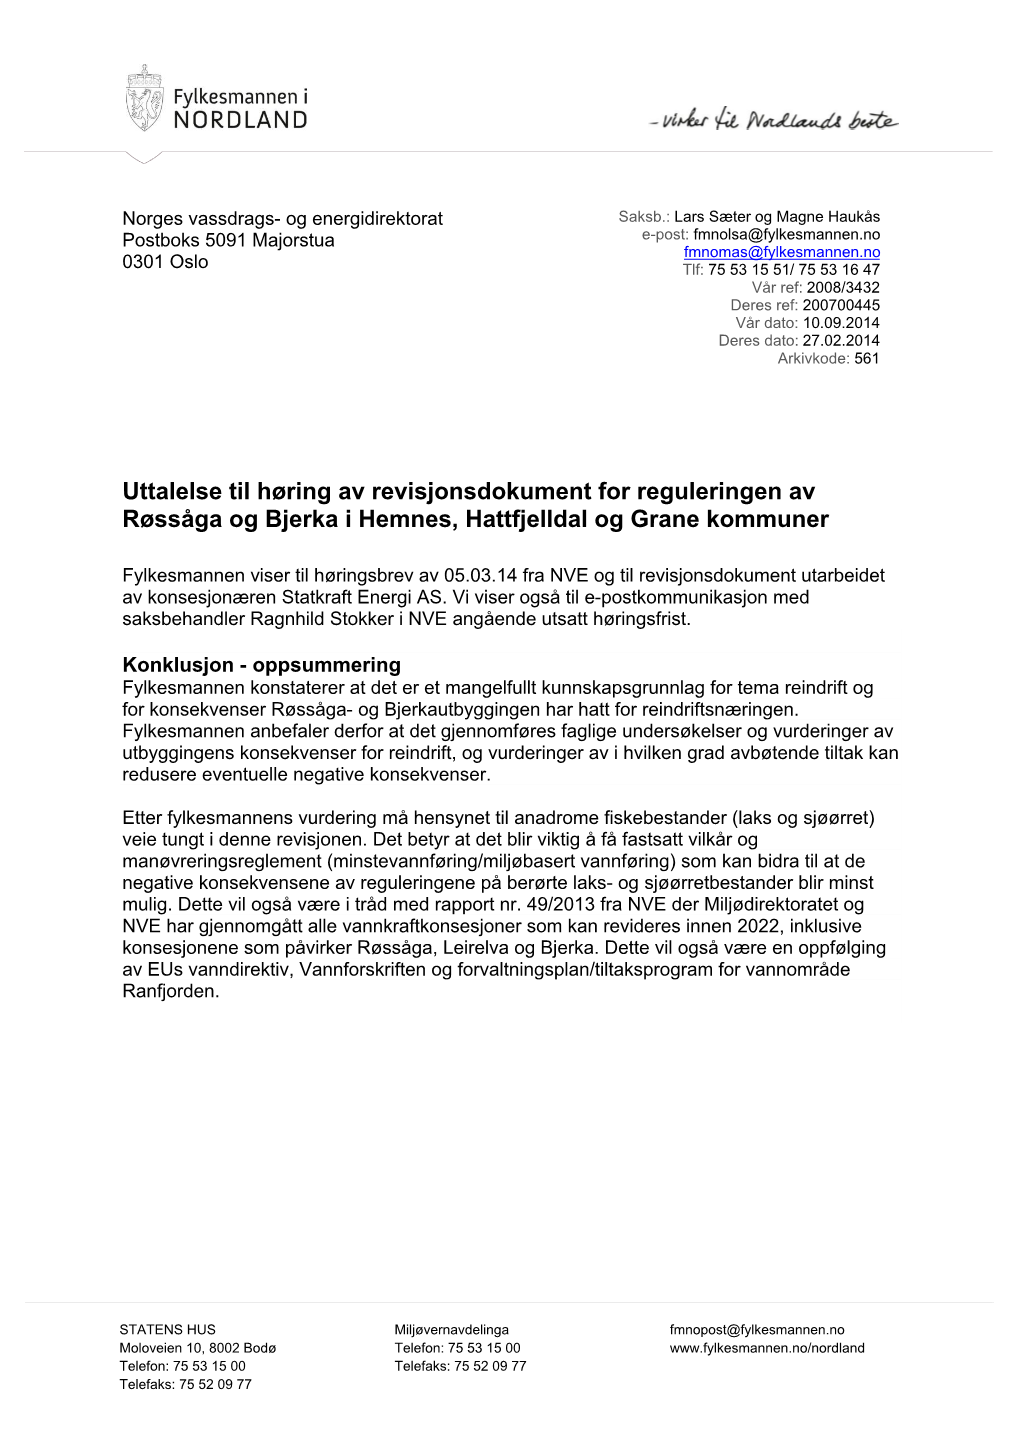 Uttalelse Til Høring Av Revisjonsdokument for Reguleringen Av Røssåga Og Bjerka I Hemnes, Hattfjelldal Og Grane Kommuner